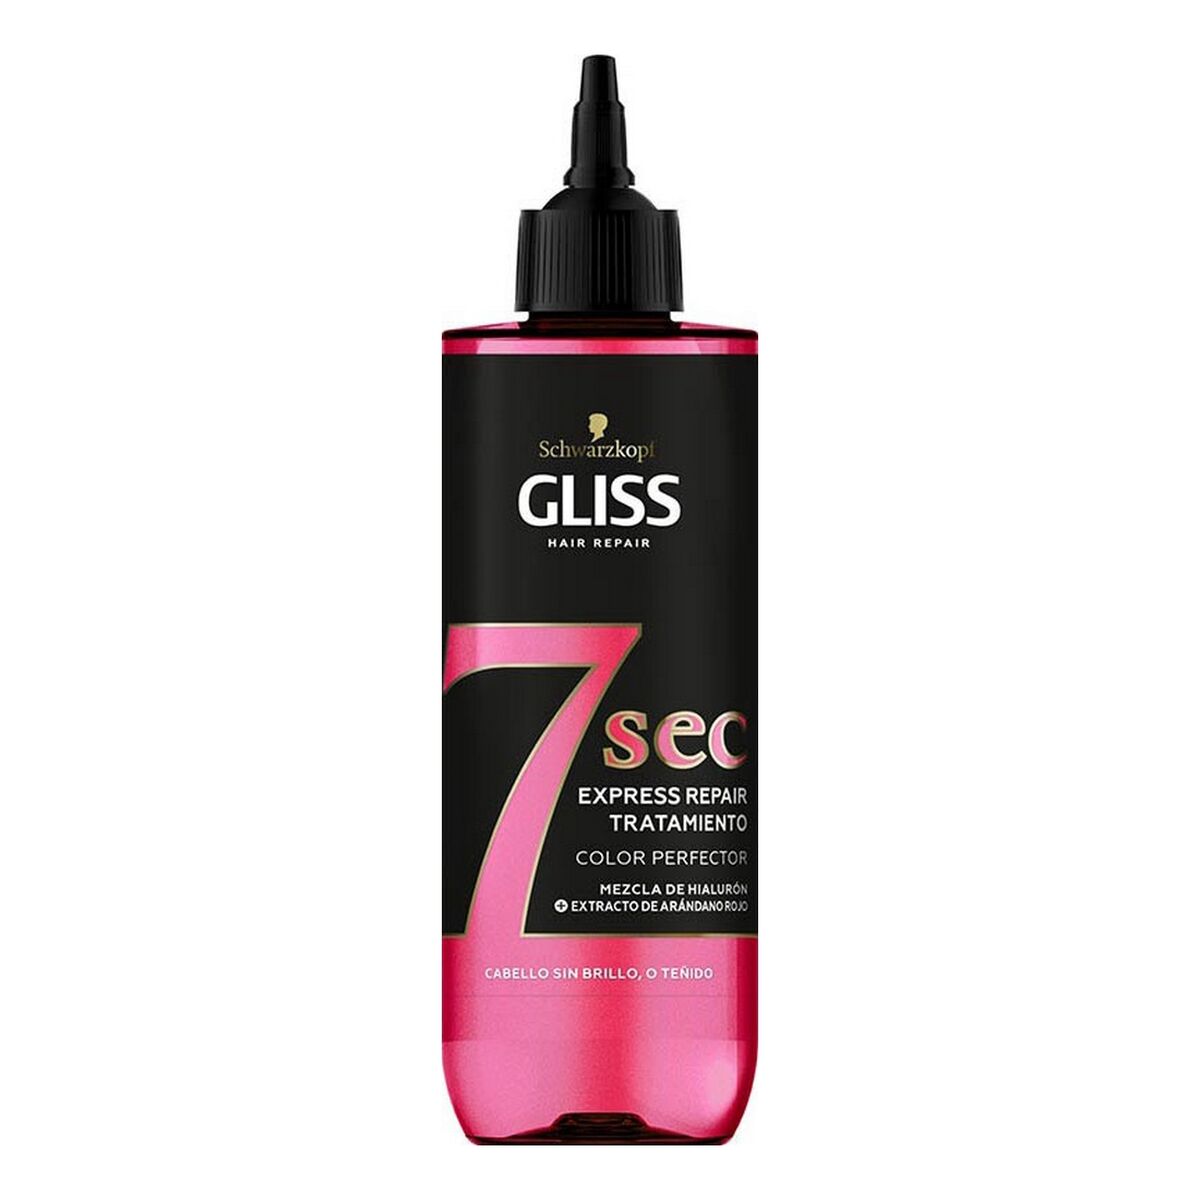 Masque réparateur pour cheveux Schwarzkopf Gliss 7 Sec Color Perfector (200 ml)